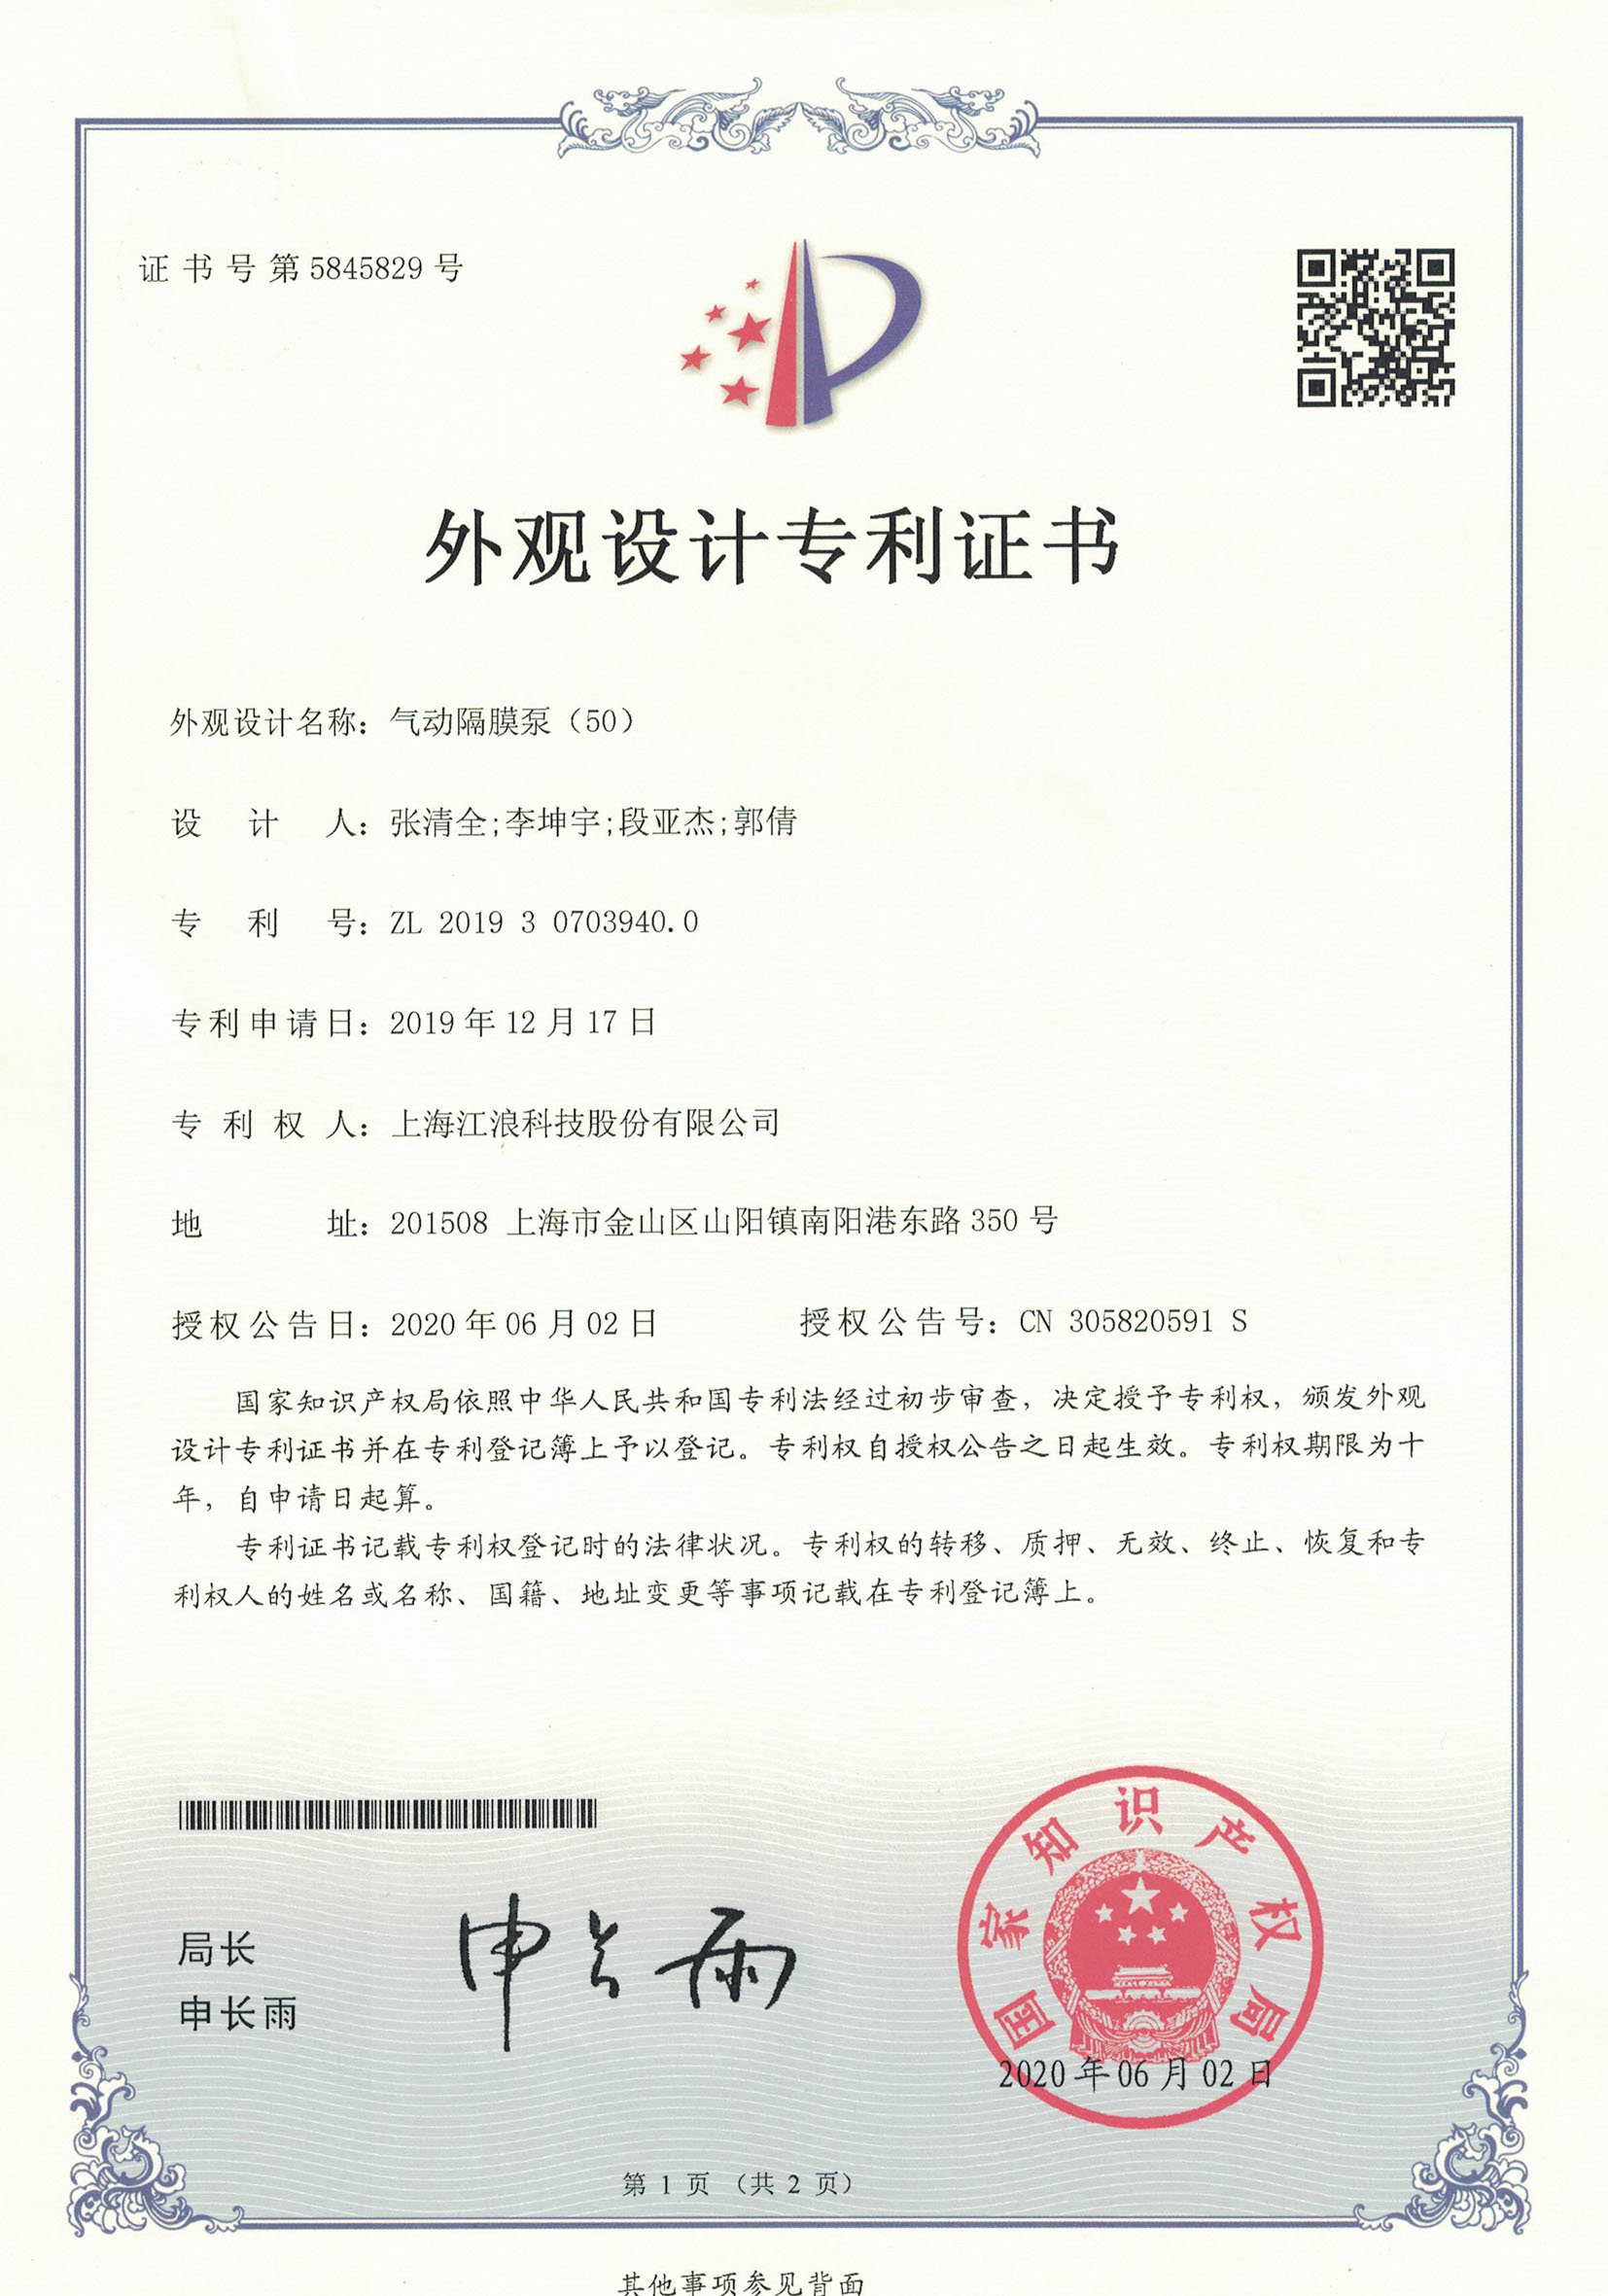 江浪科技 气动隔膜泵(50)证书